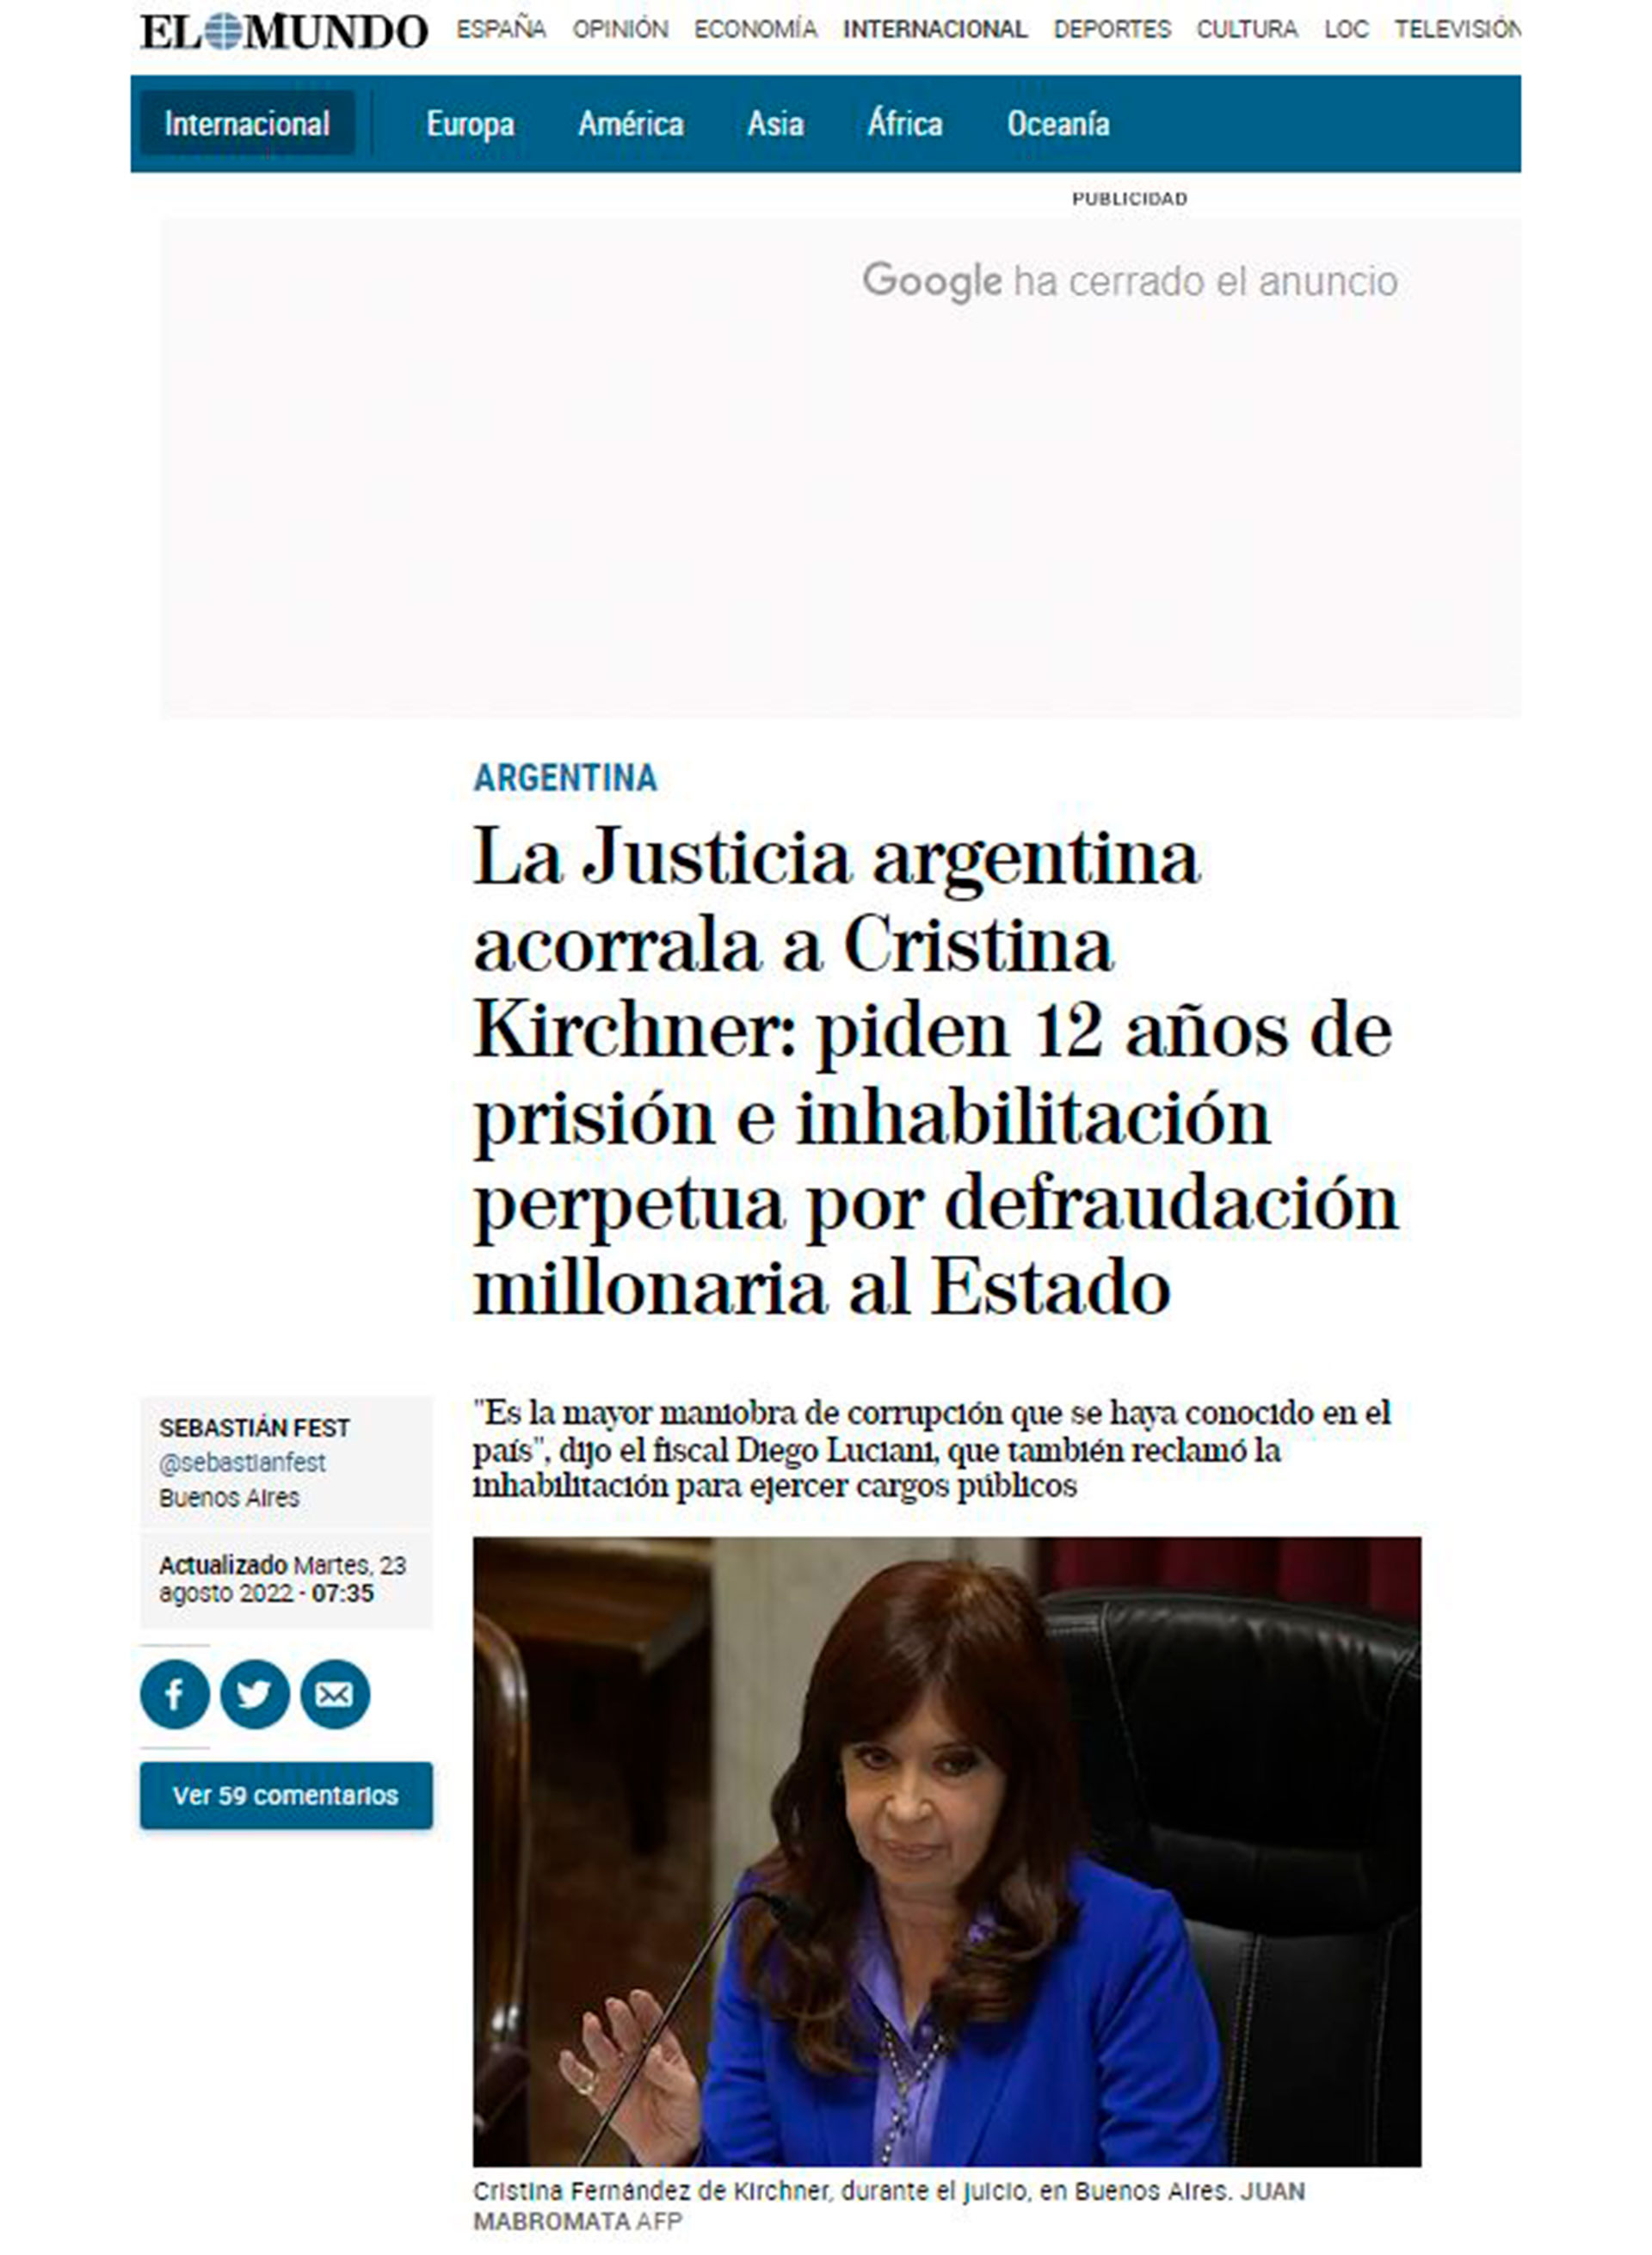 La couverture du journal espagnol El Mundo sur la demande d'arrestation de la vice-présidente Cristina Kirchner. 